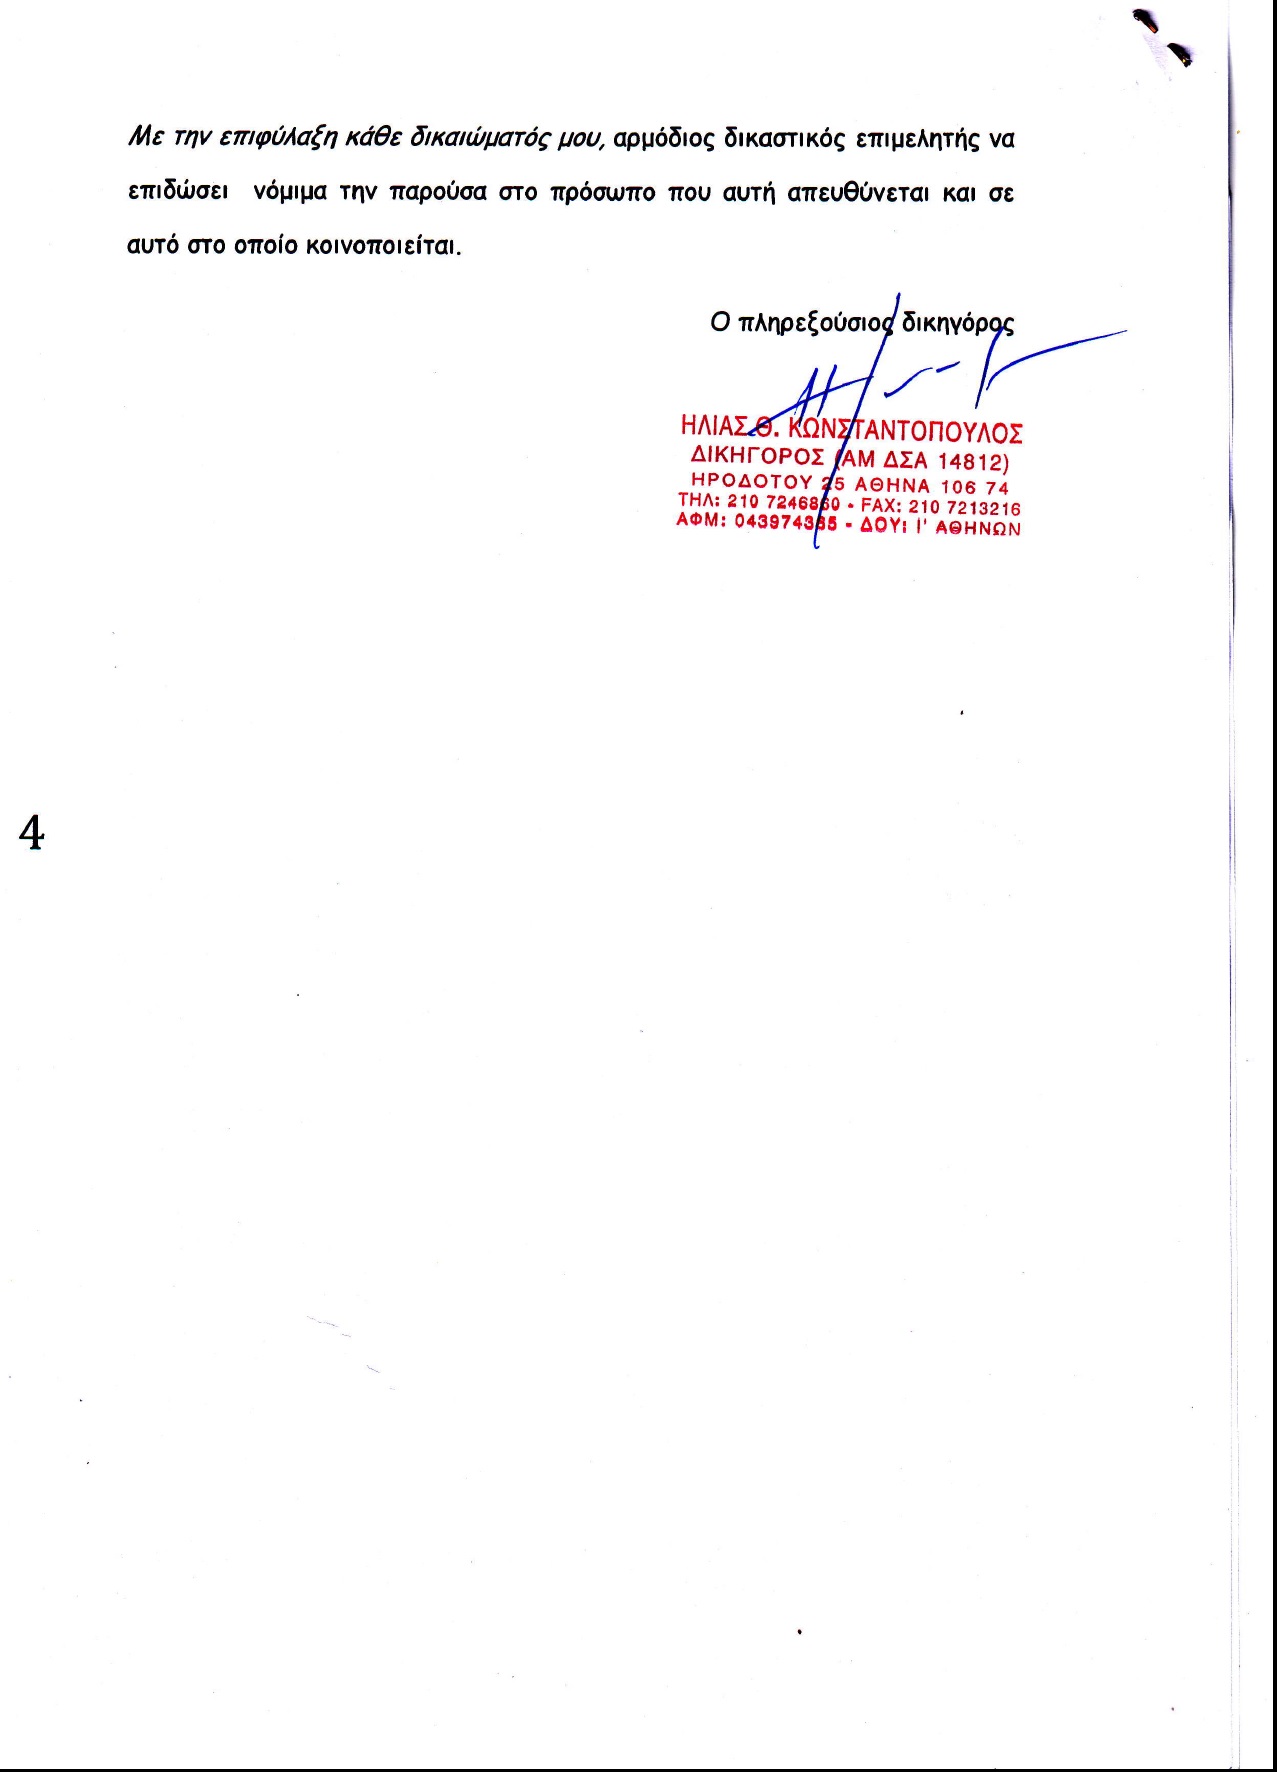 Εξώδικη δήλωση-παραίτησης από το Διοικητικό Συμβούλιο του ΣΕΜΑ, του κ. Δημήτρη Τσεσμετζόγλου